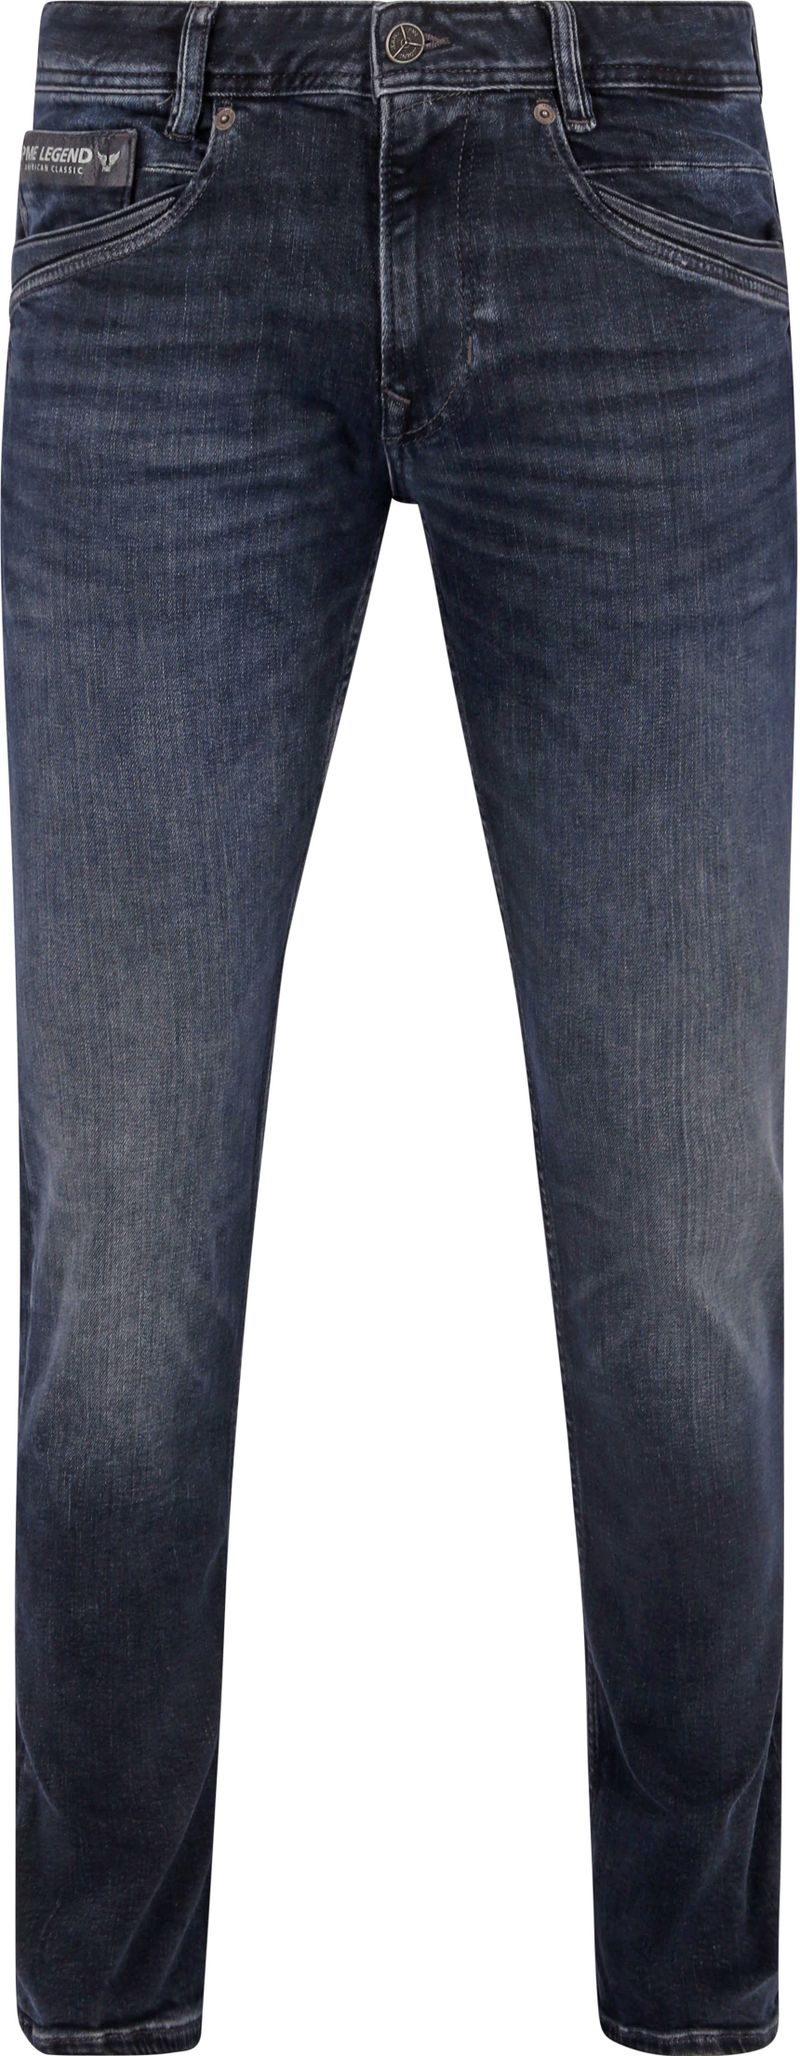 PME Legend Skyrak Jeans Blau DII - Größe W 34 - L 30 günstig online kaufen